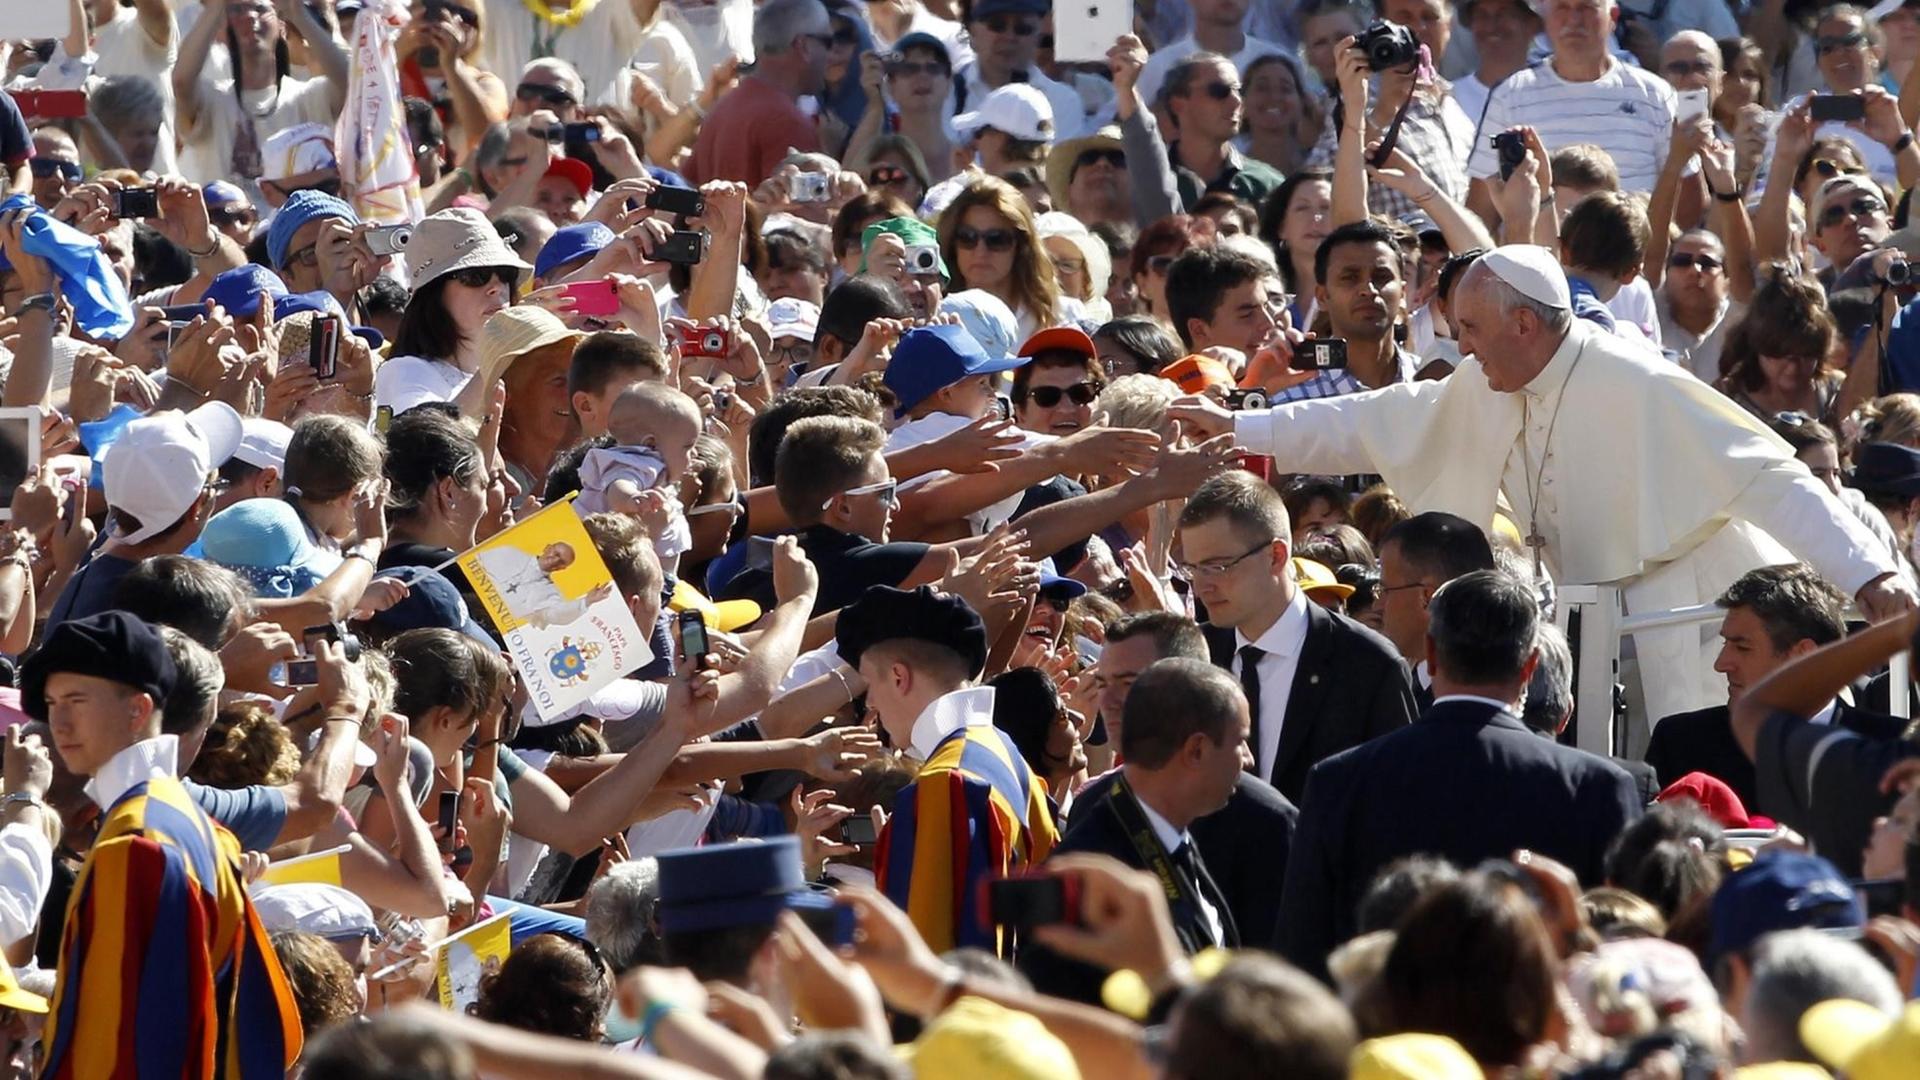 Papst Franziskus fährt während einer Generalaudienz durch die Menschenmenge.